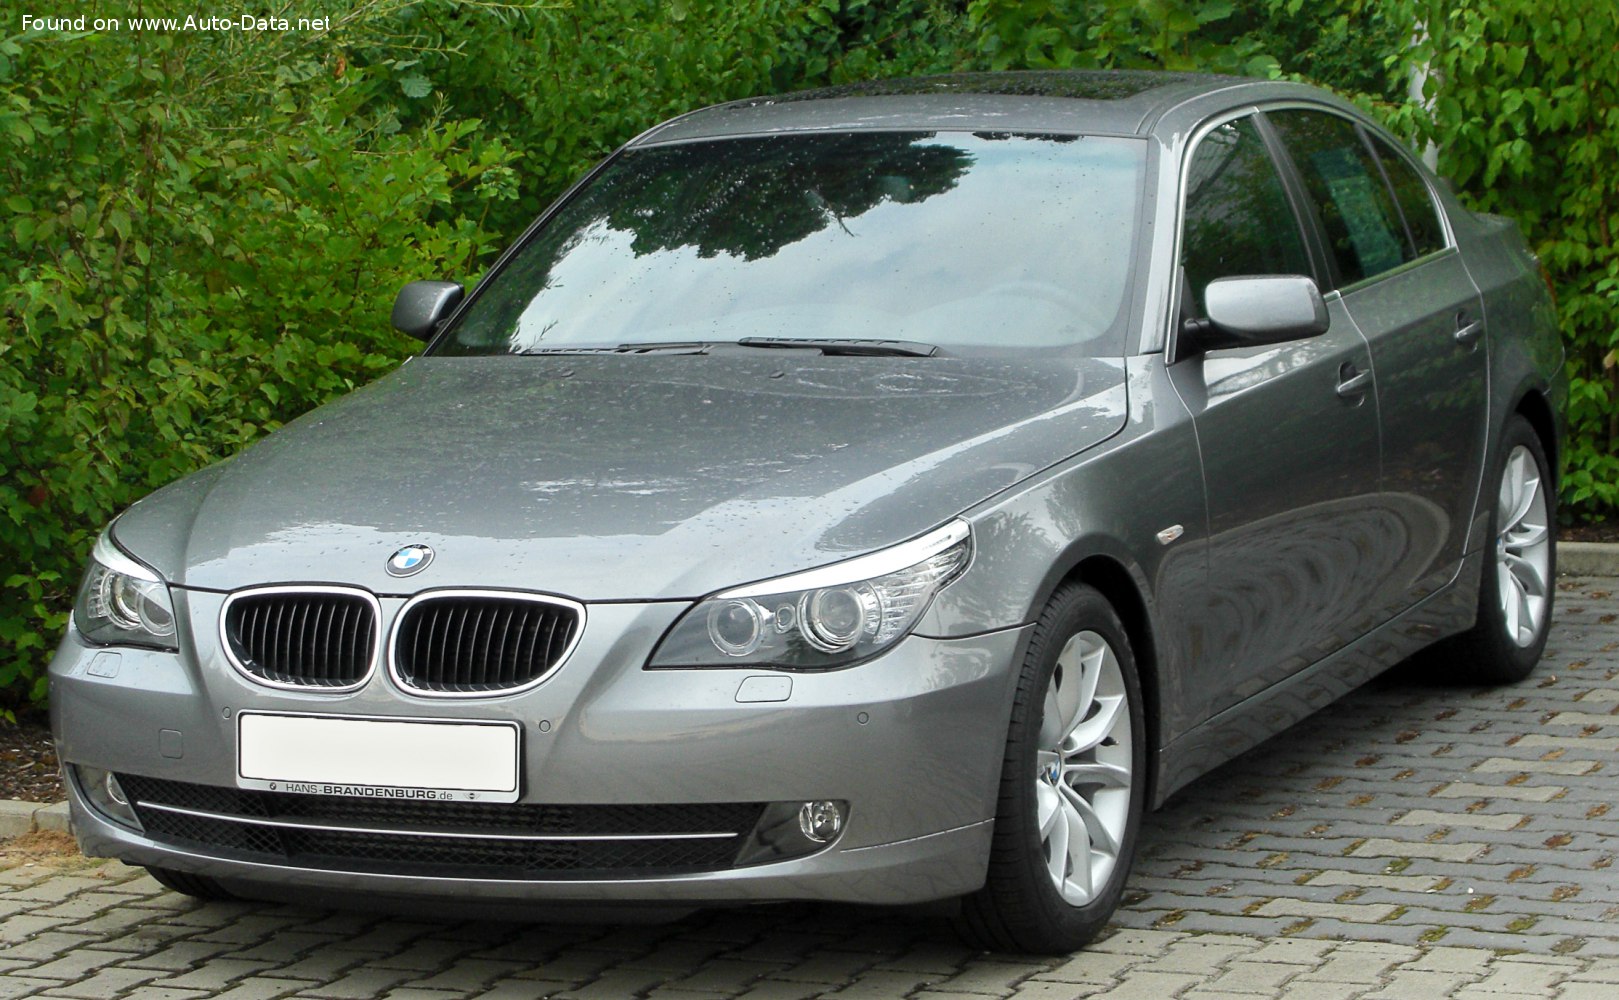 2007 BMW 5er (E60, Facelift 2007) 520d (177 PS)